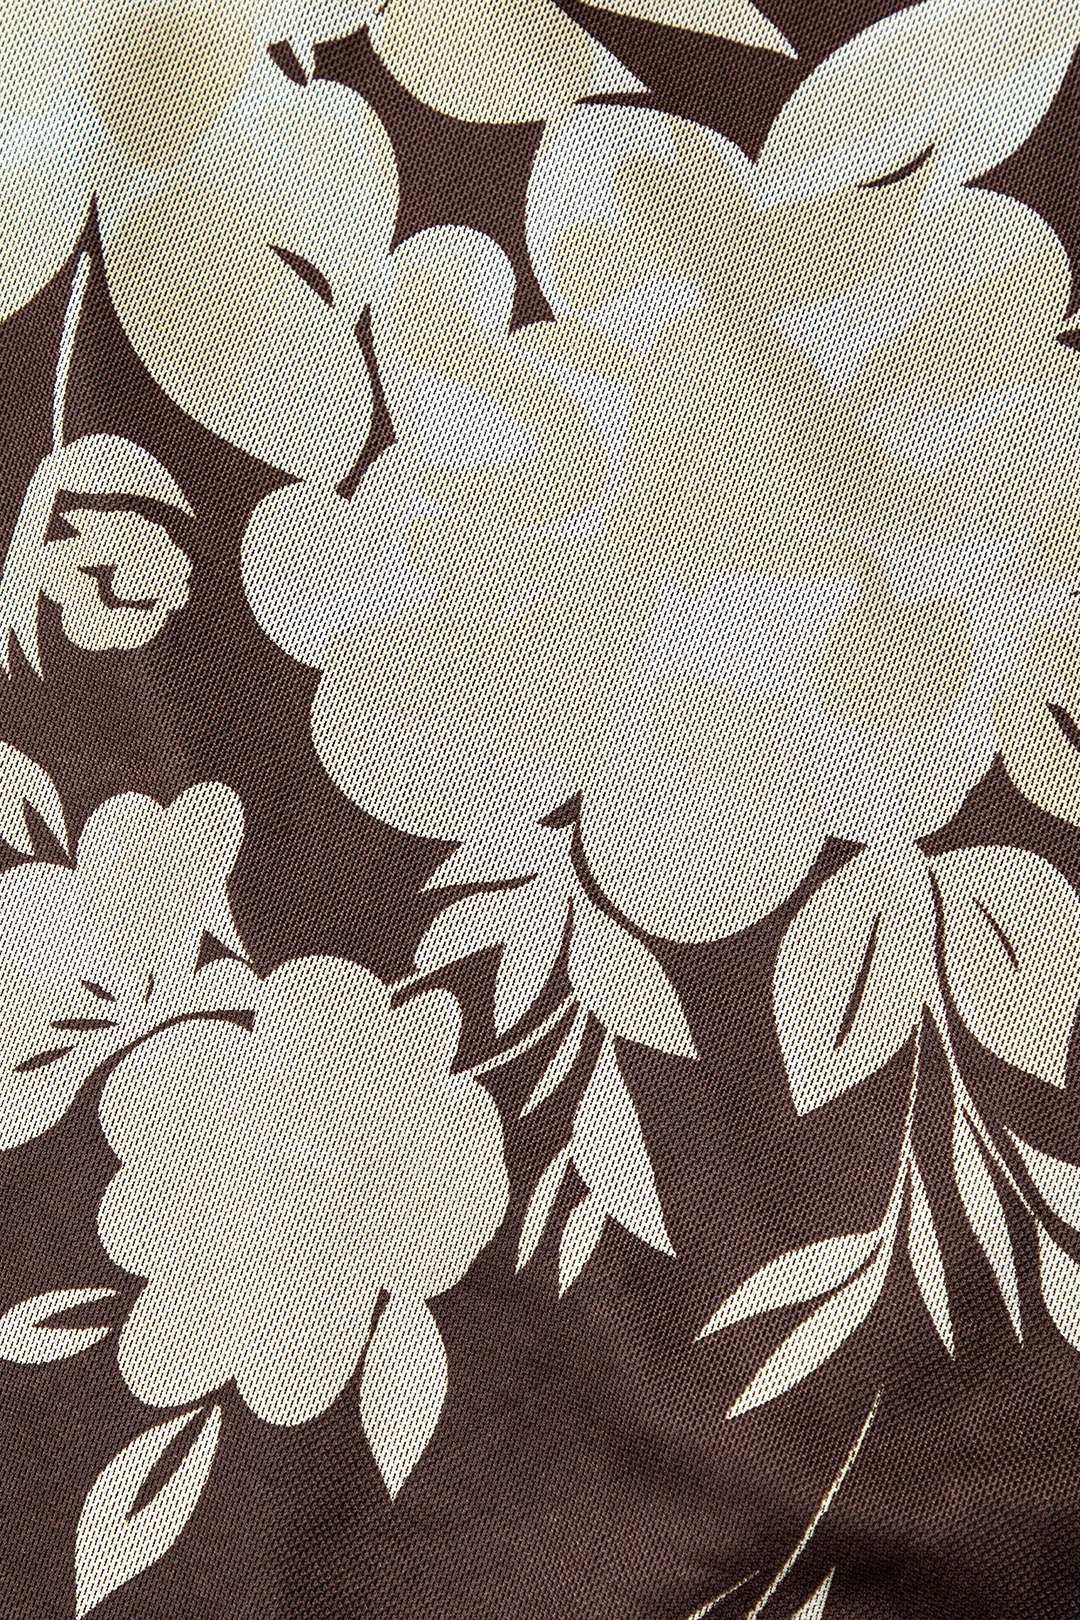 Floral Print Lace Trim Slit Maxi Dress – Micas